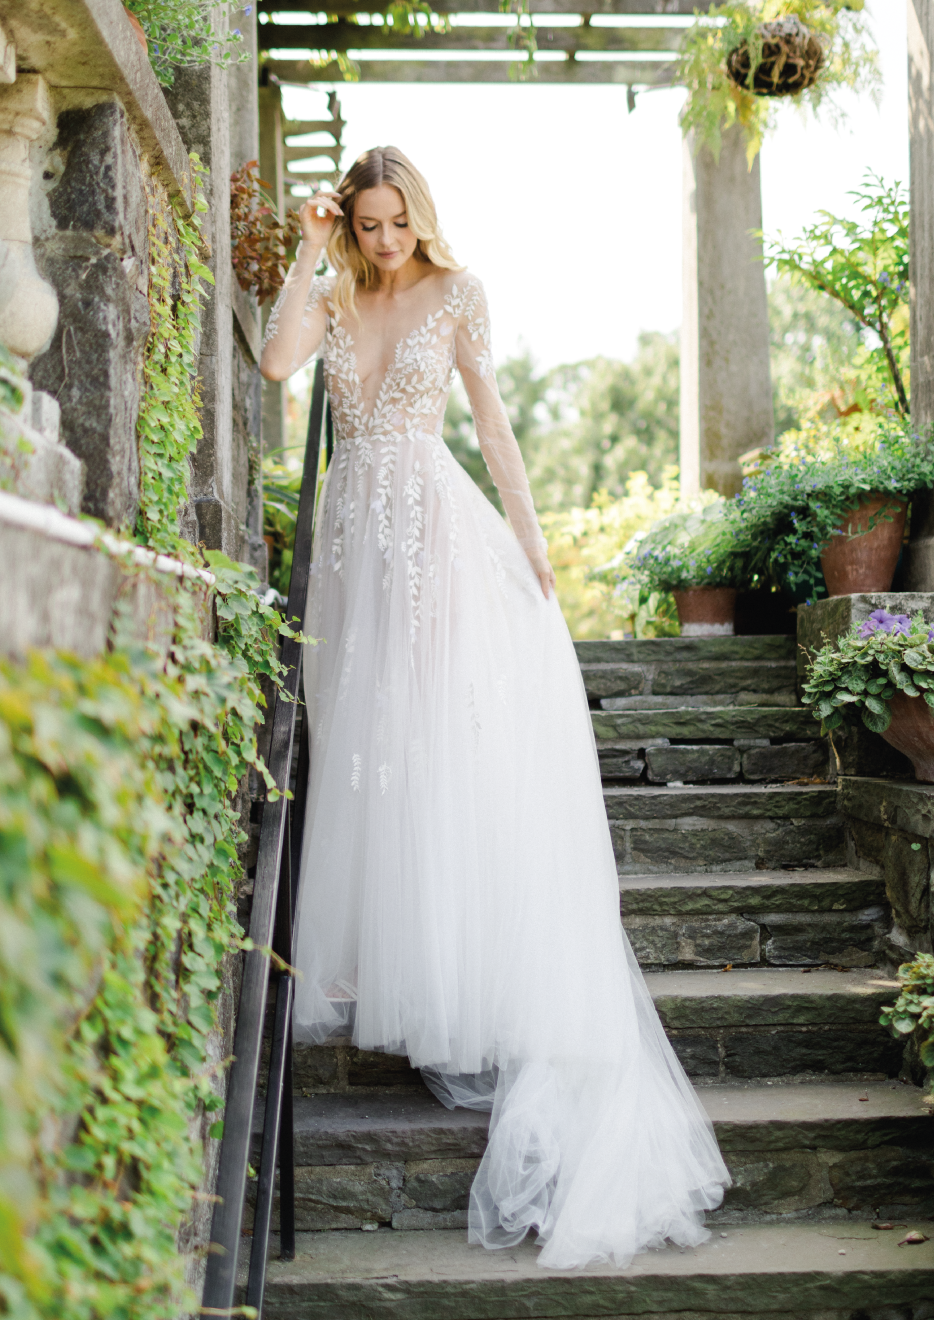 Bride Dress Model Margarita - Dress with V-neck, Long Sleeve Embroidered gown - Verdin New York